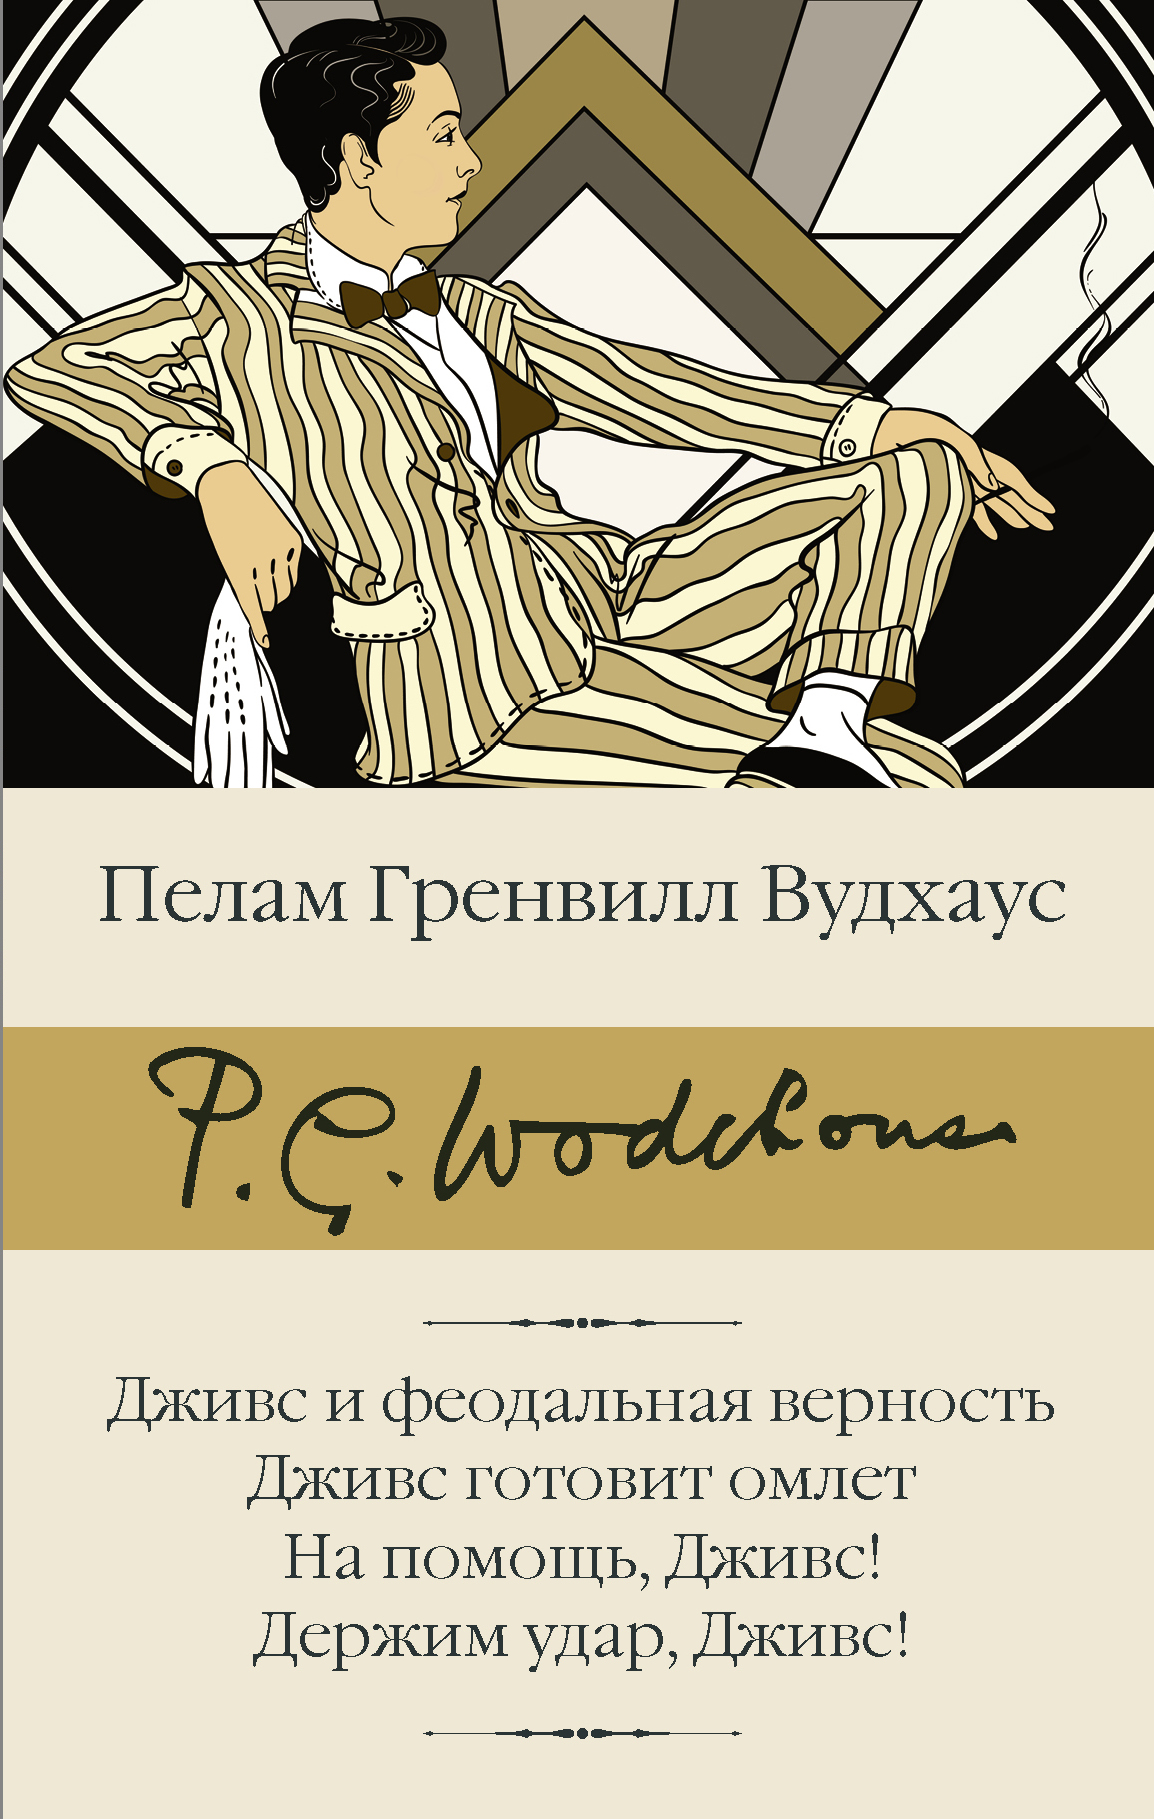 Собрание сочинений П. Вудхауса в 5 томах